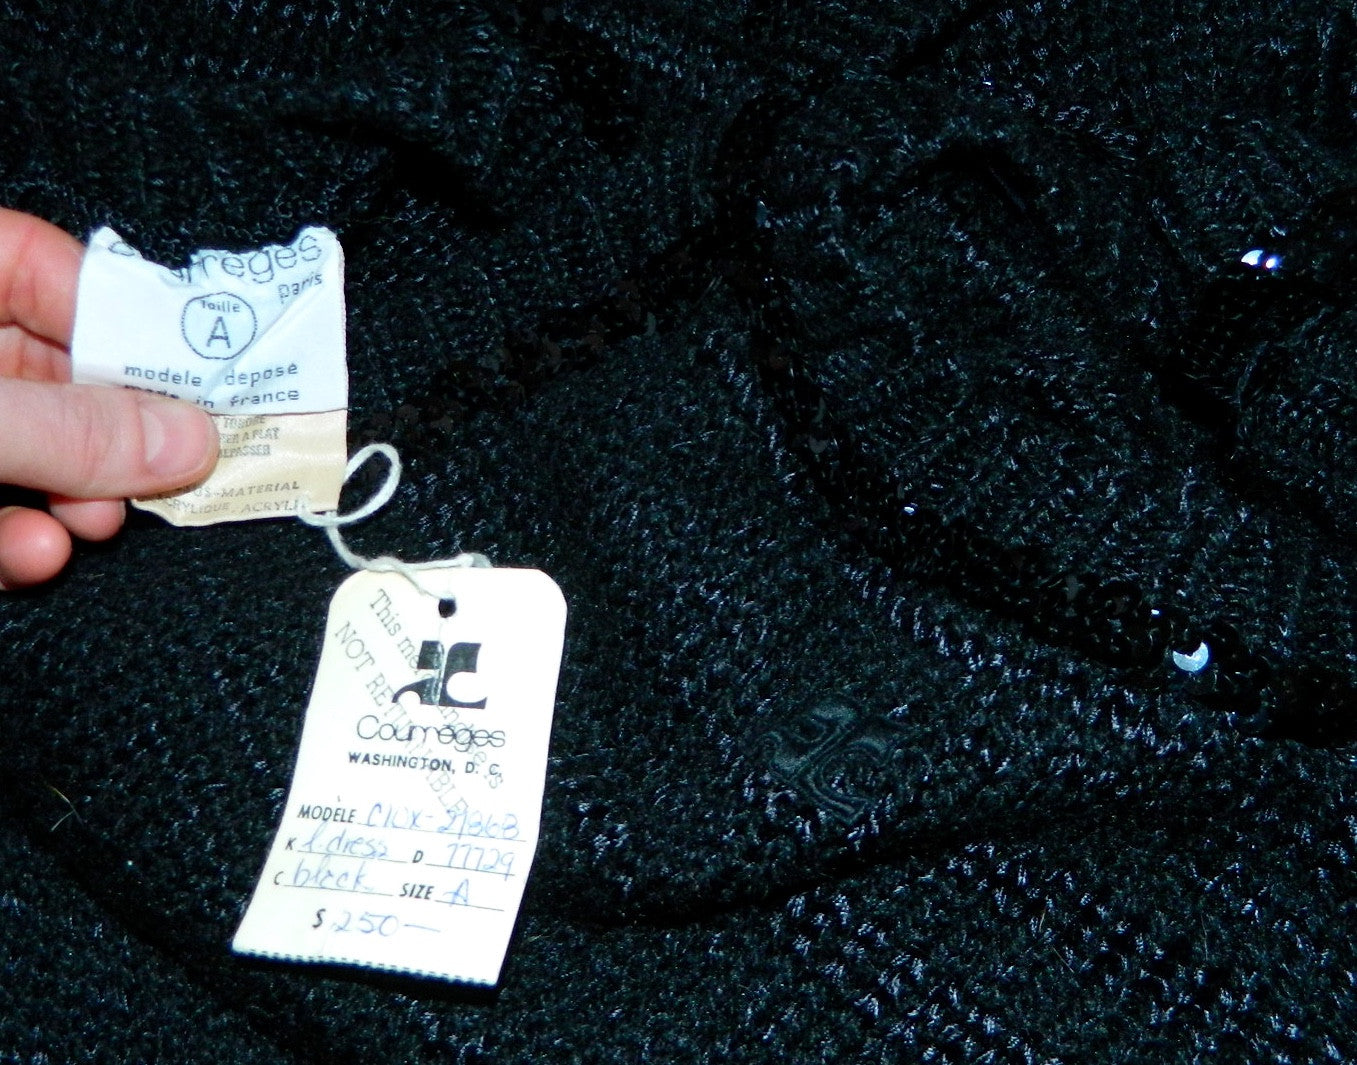 vintage COURREGES dress / 1960s MOD black crochet knit halter maxi gown XS